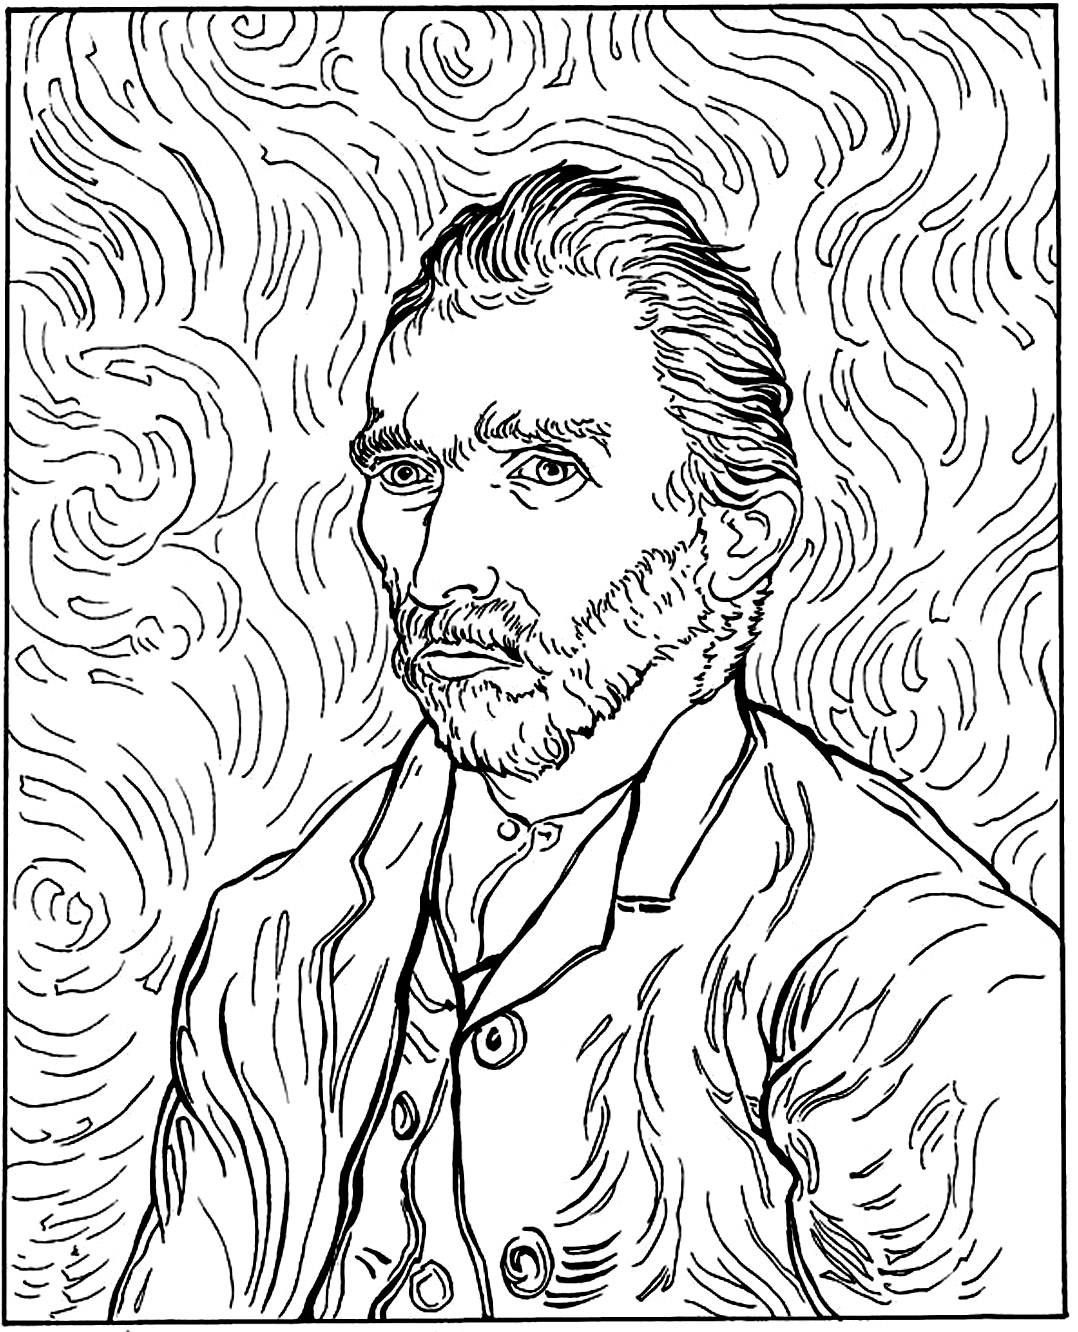 Imagem de Vincent Van Gogh para colorir, fácil para as crianças